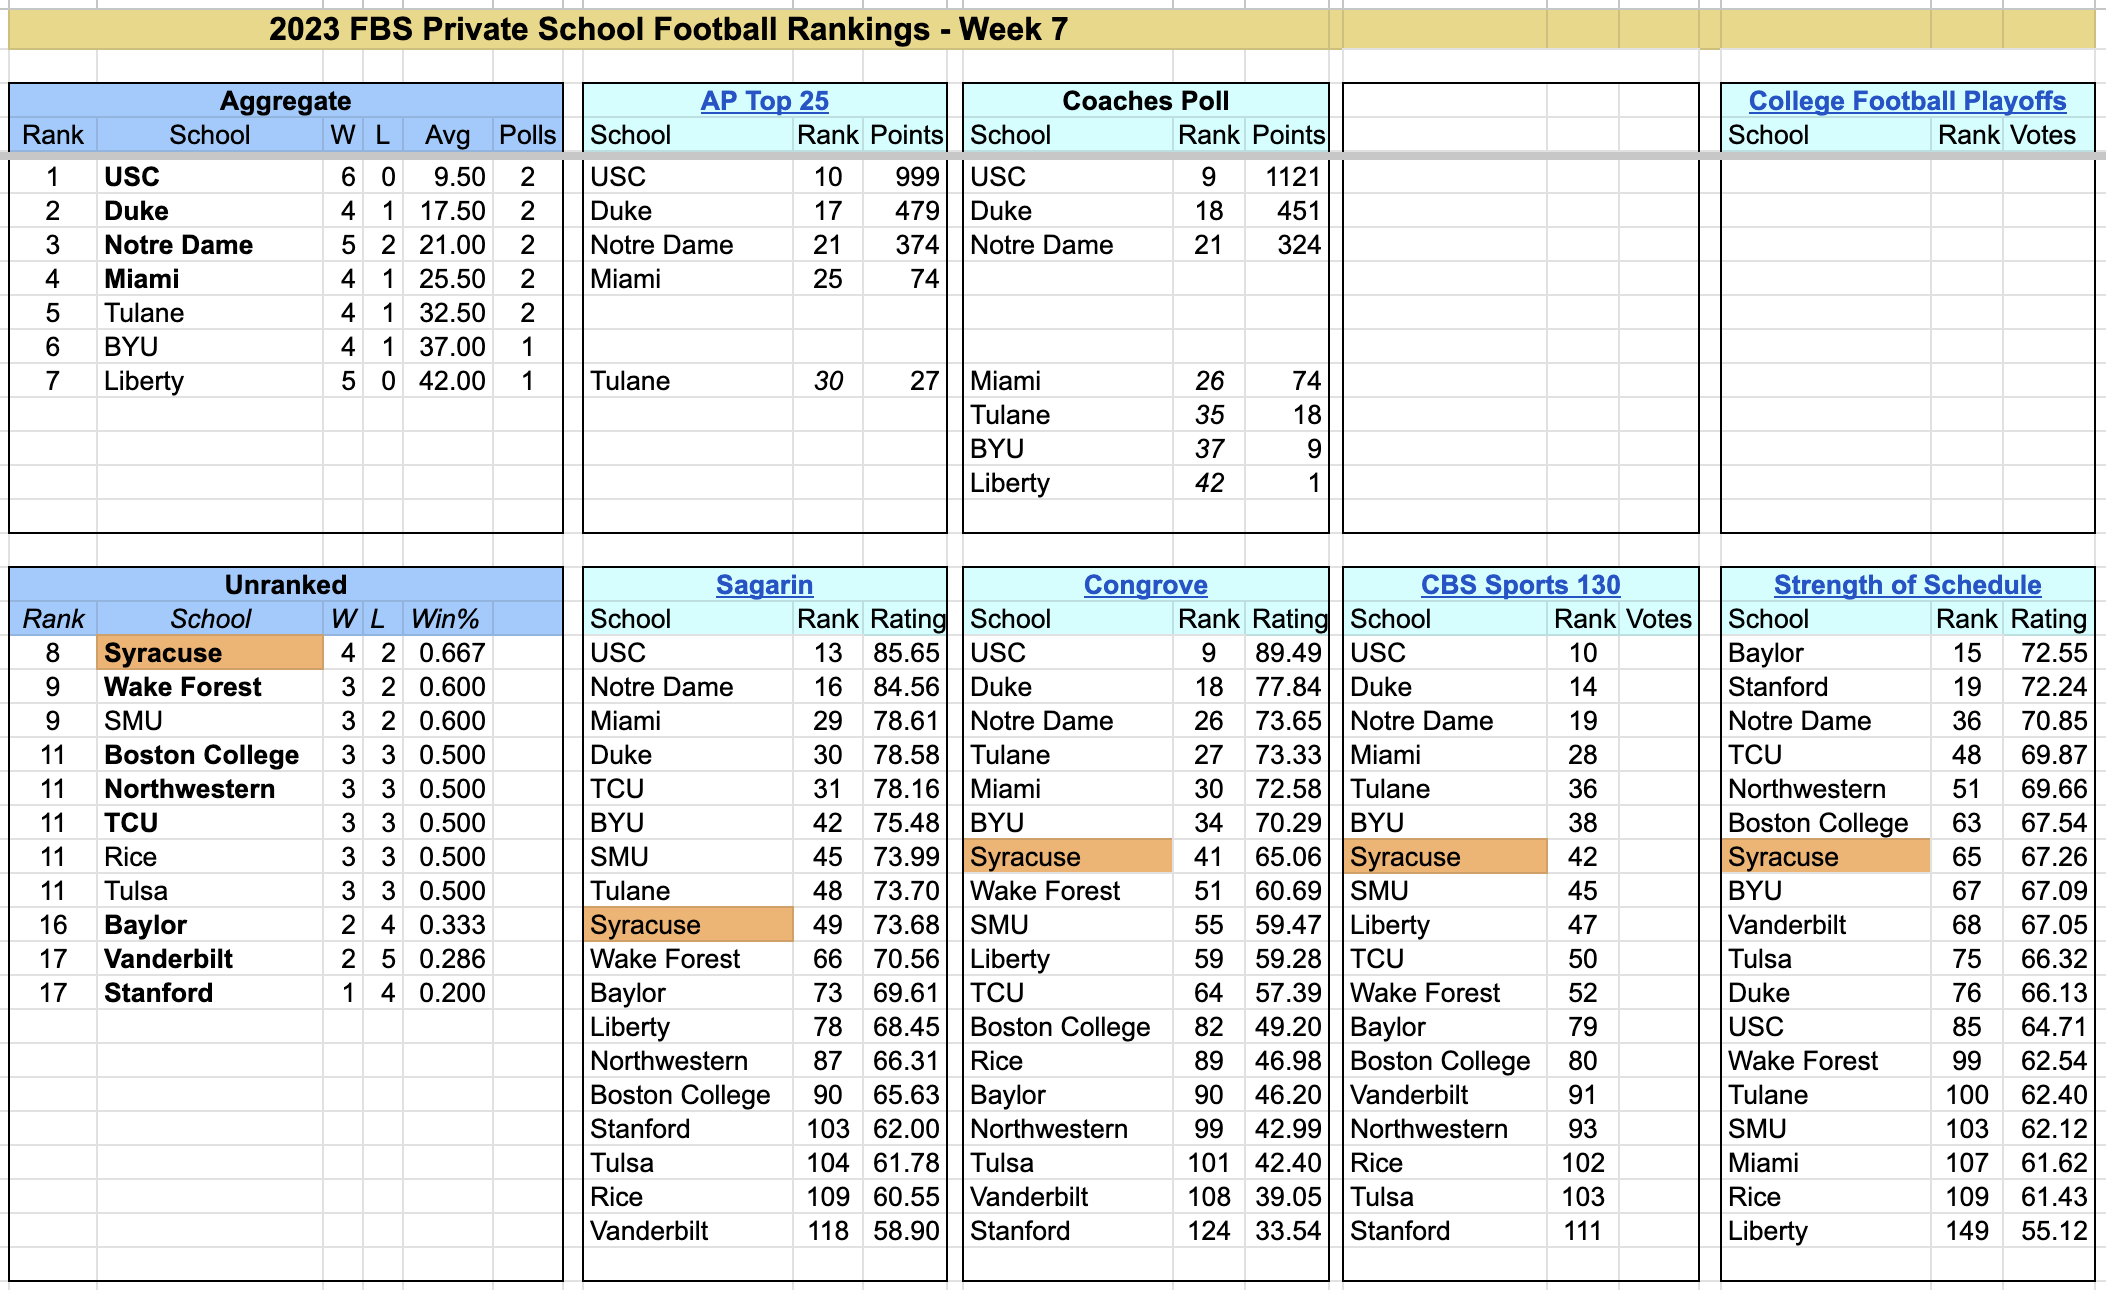 2023-FBS-PrivateSchoolFootballRankings-Week7.png